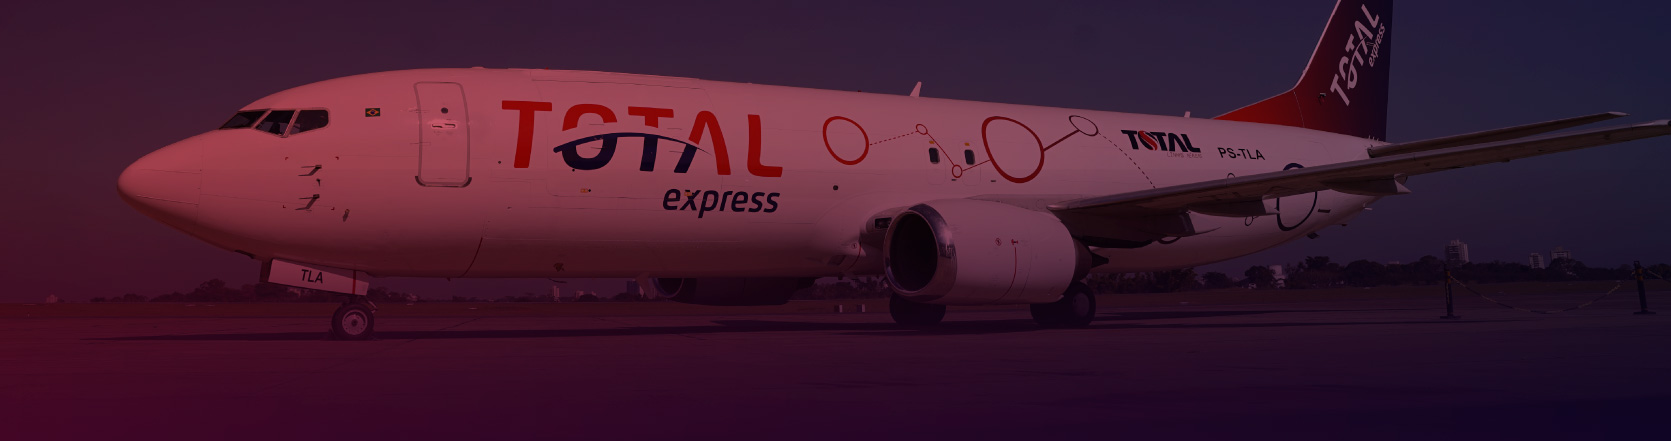 Foto lateral de um avião com o logotipo da Total Express estampado por toda a lataria.